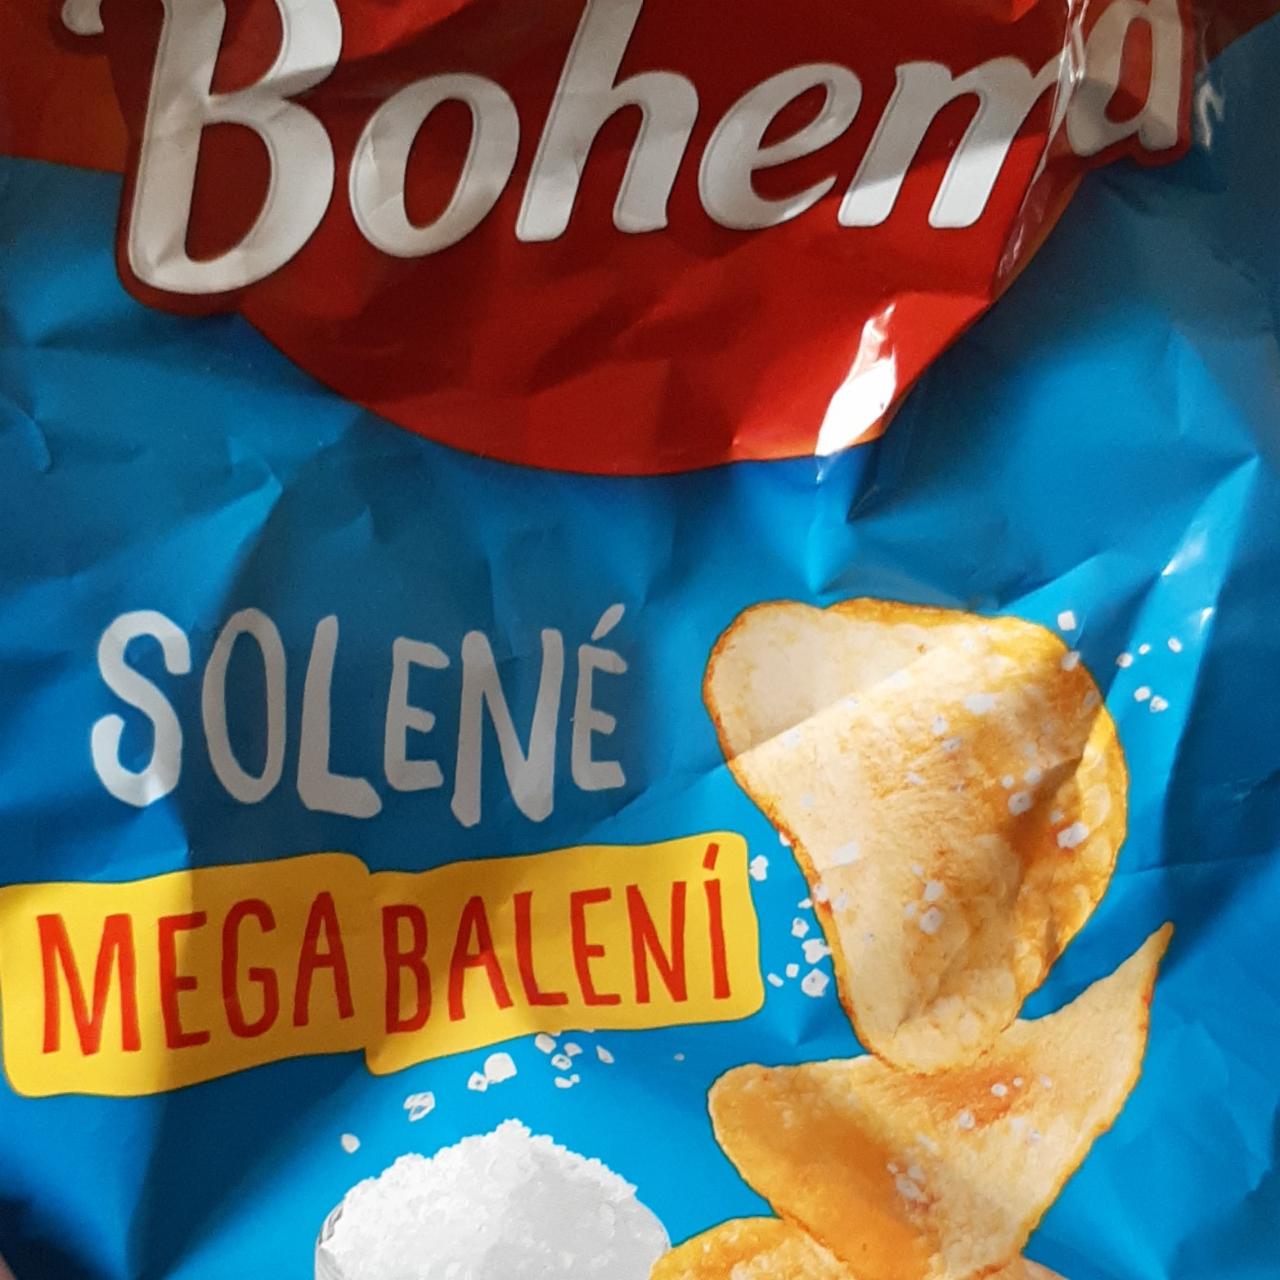 Fotografie - Bohemia chips solené 2